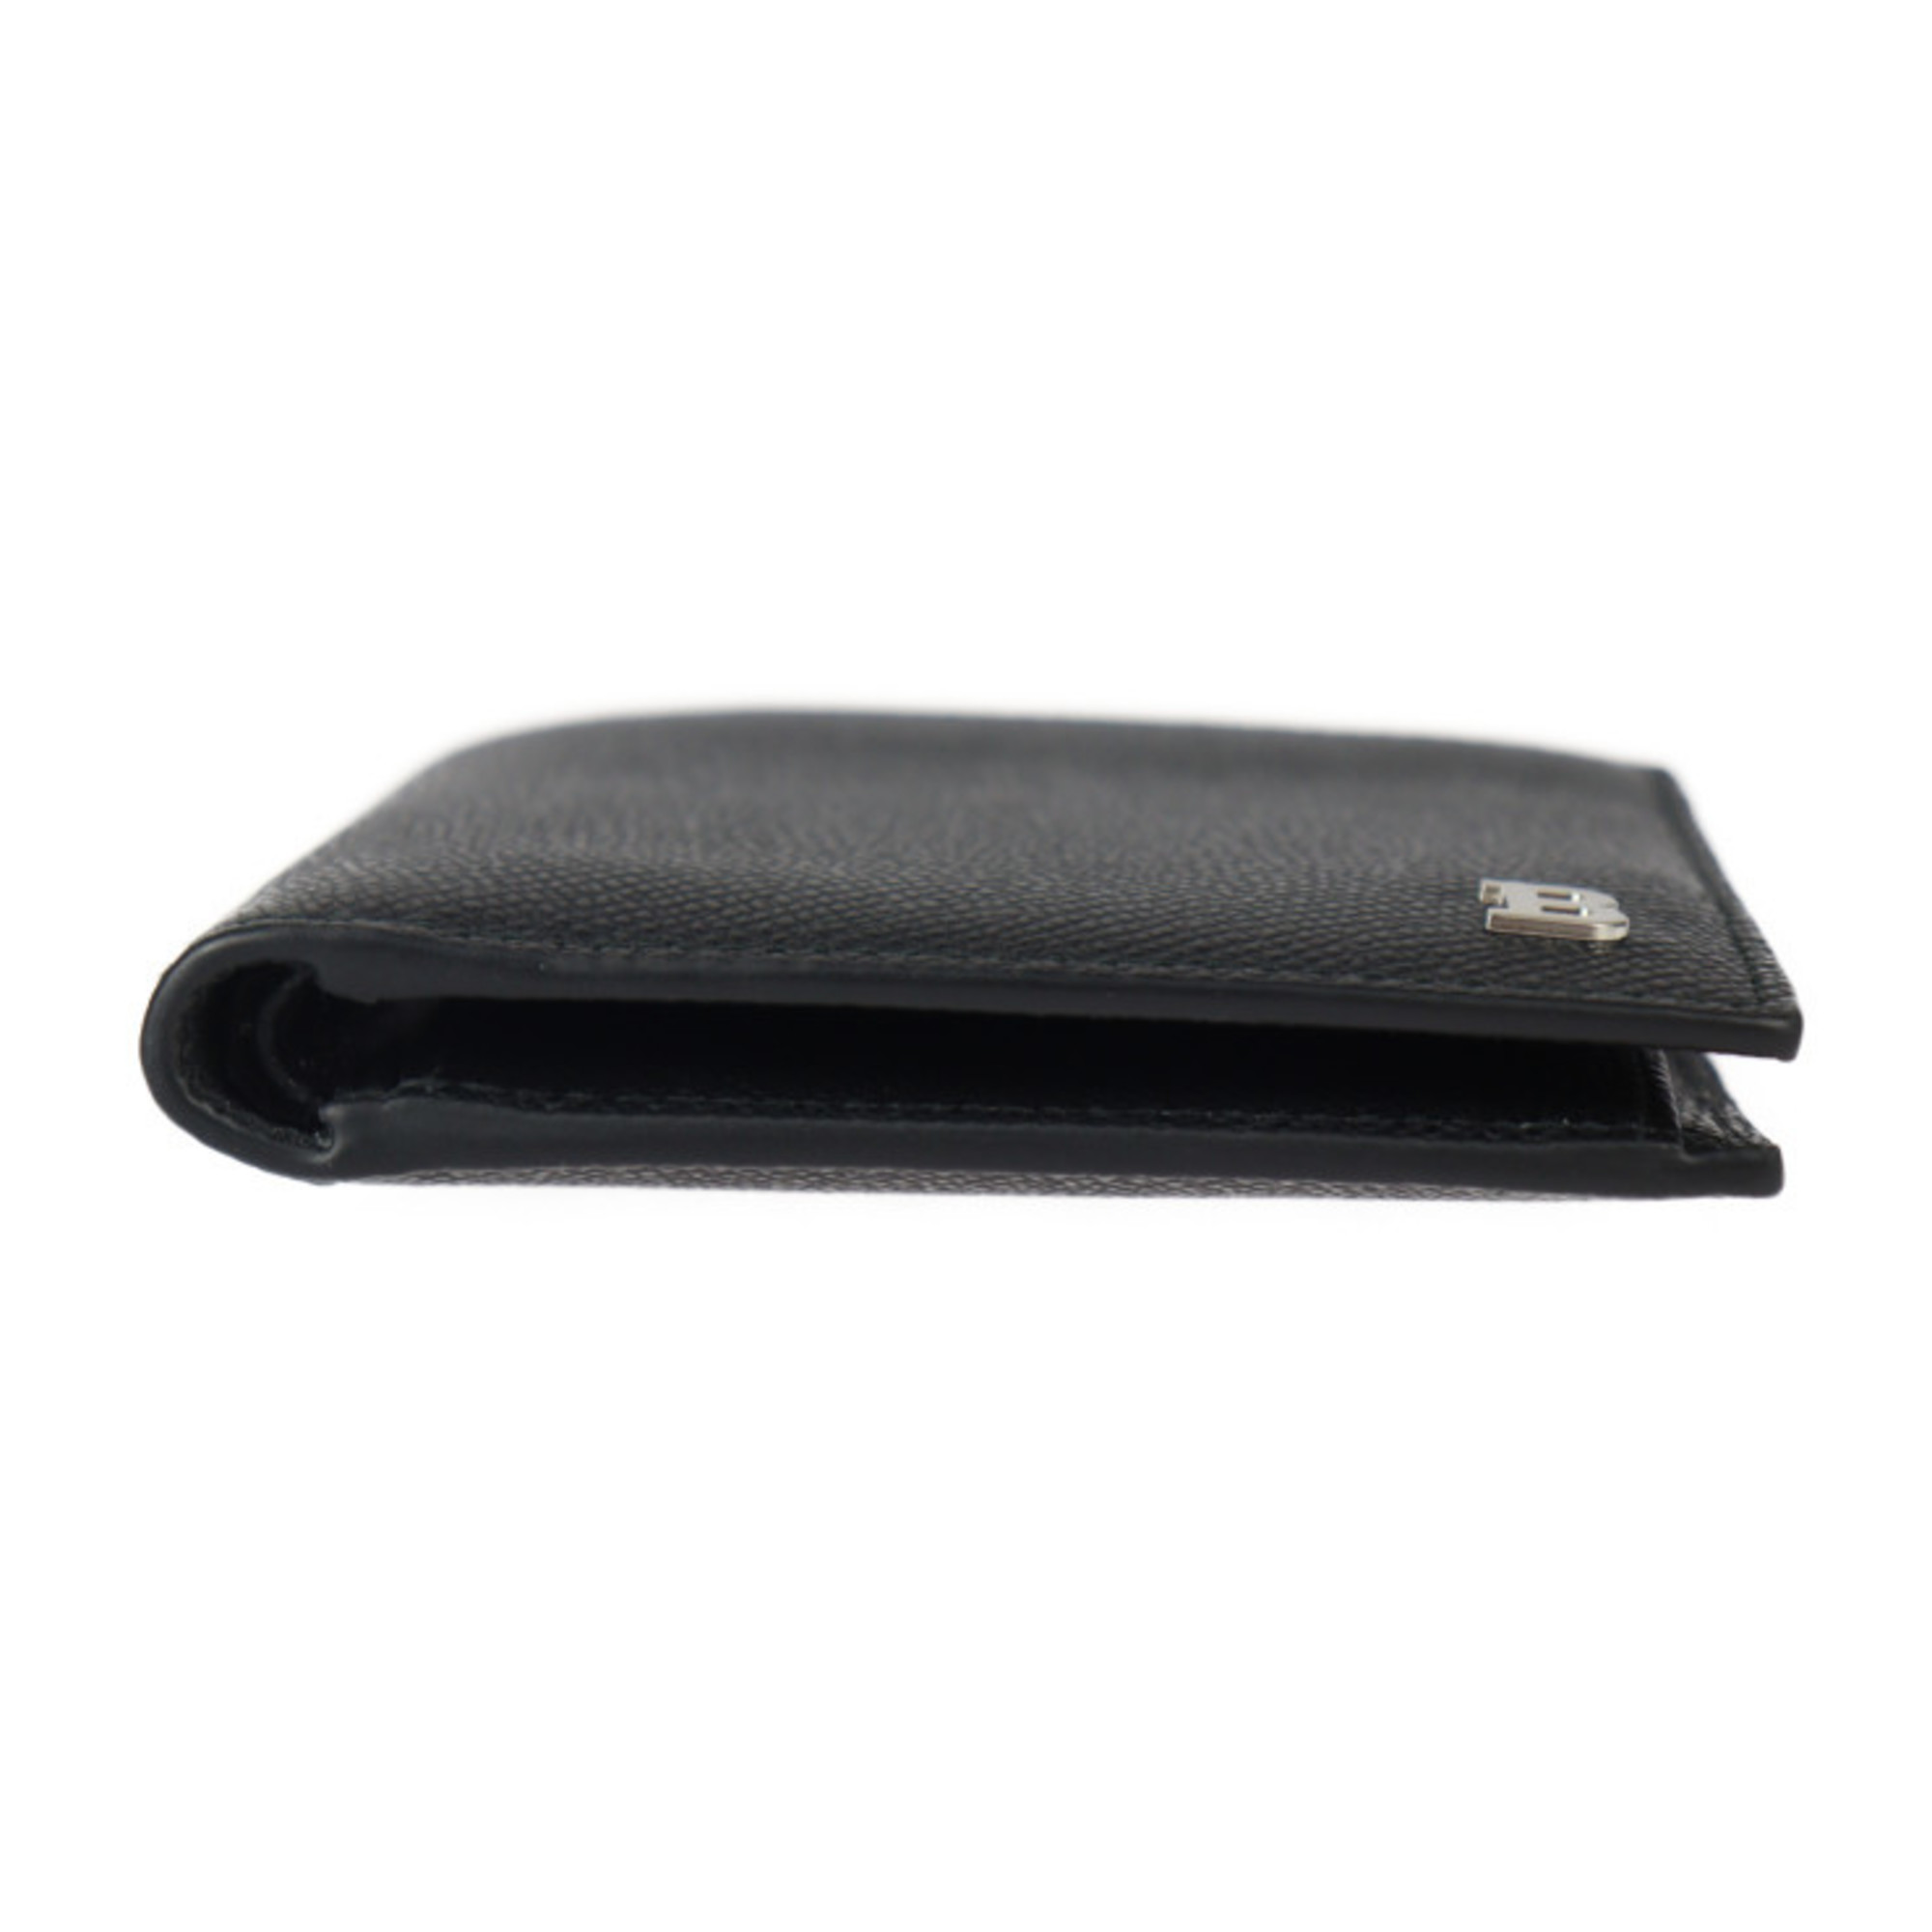 BALLY BYIE.BM.O Bi-fold Wallet 6301153 Leather Black B